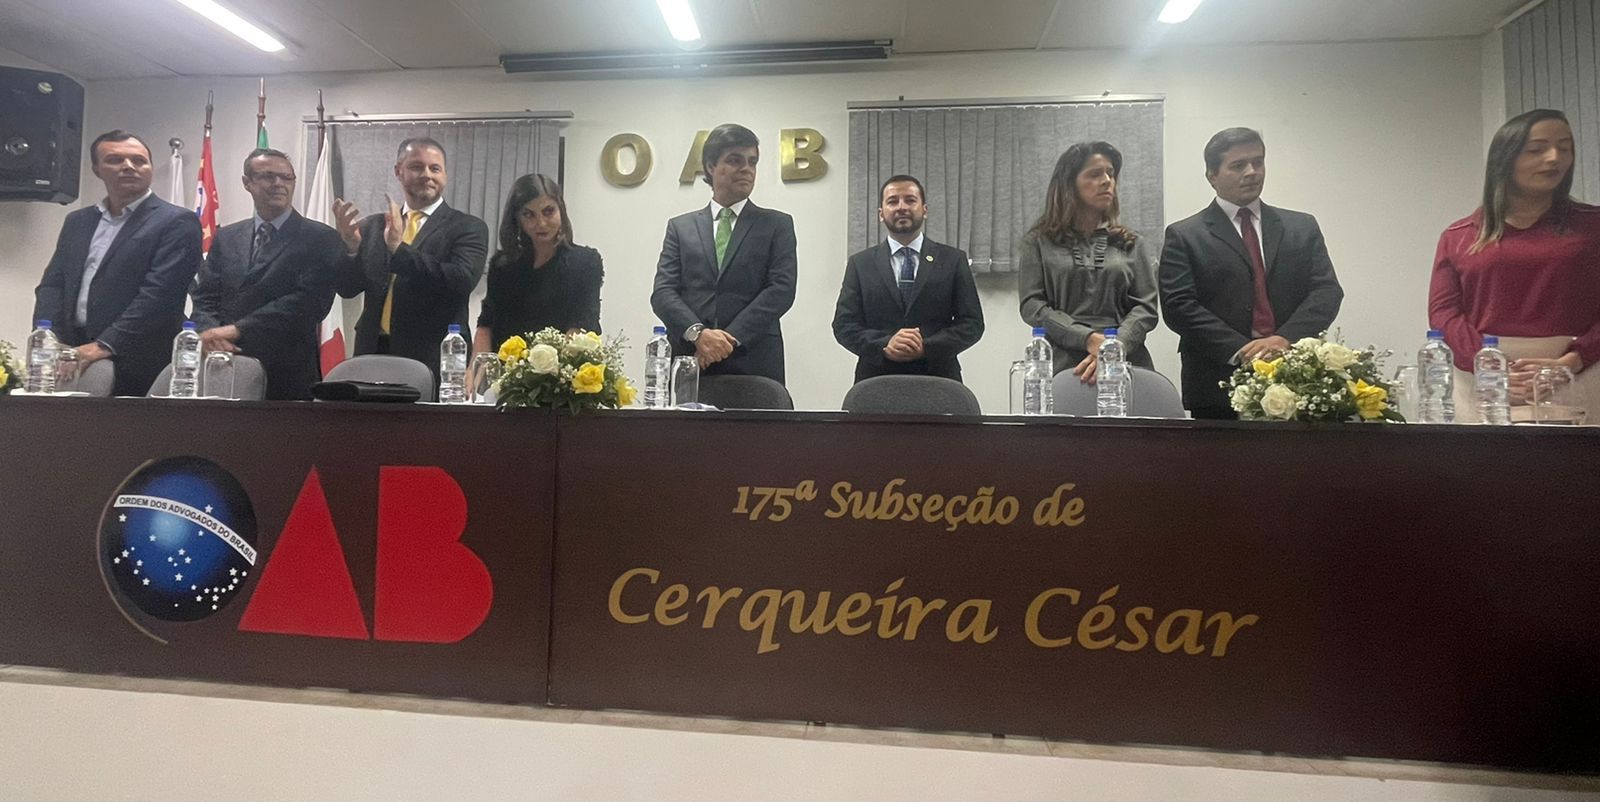 OAB SP participa da cerimônia de posse da diretoria da Subseção de Cerqueira César